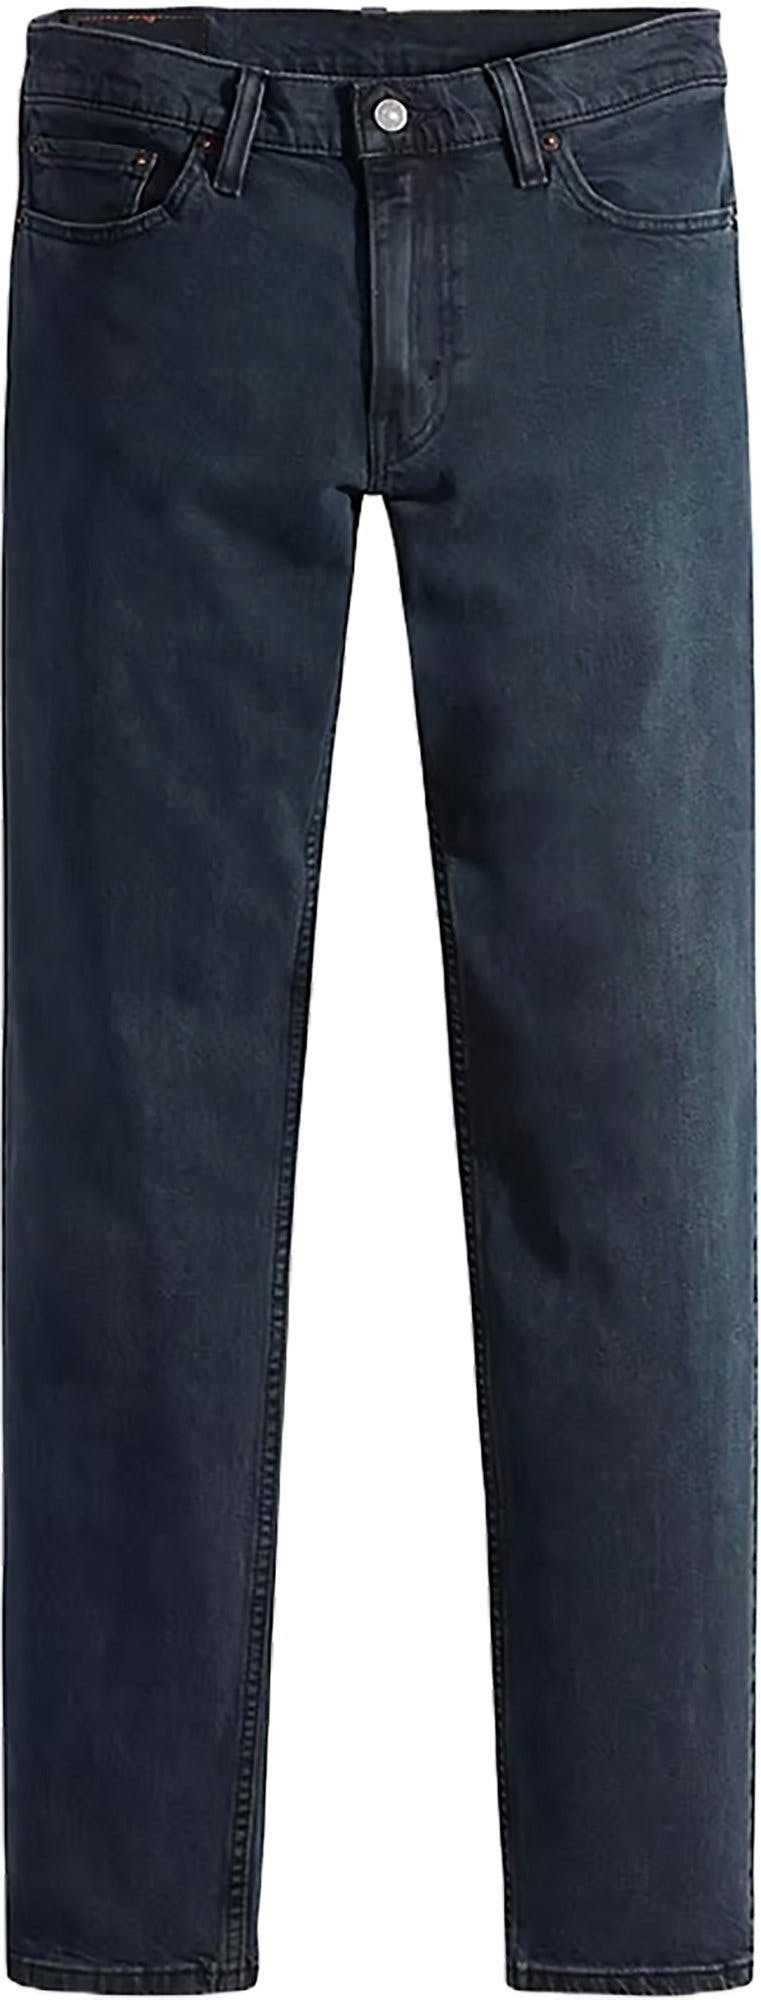 Product image for 511 Slim Fit Flex Jeans - Men's